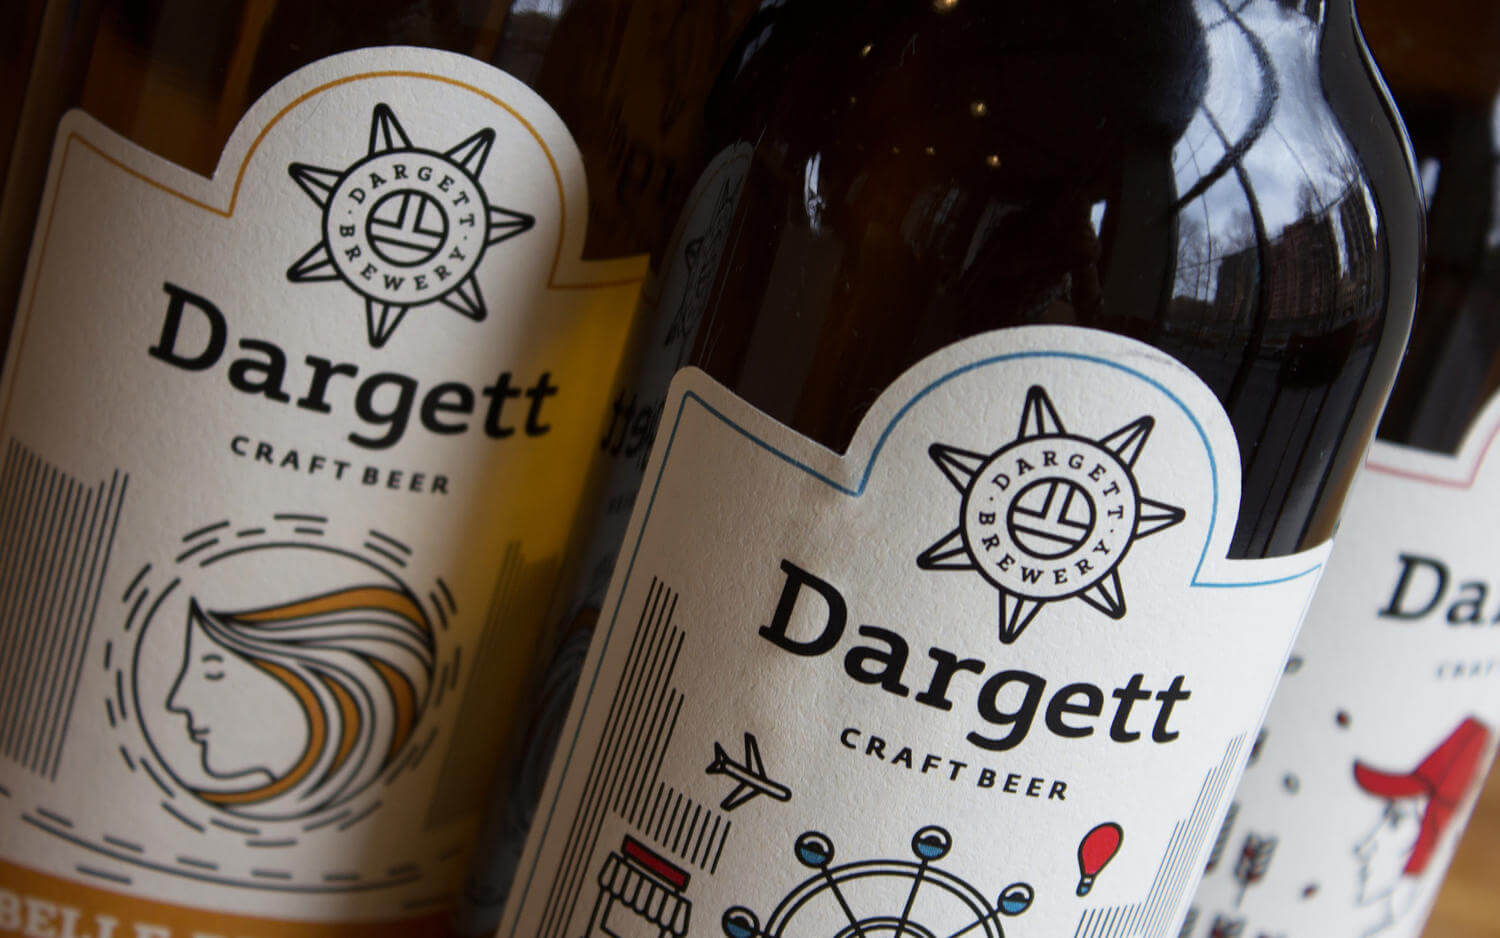 Dargett Craft Brewery (4)